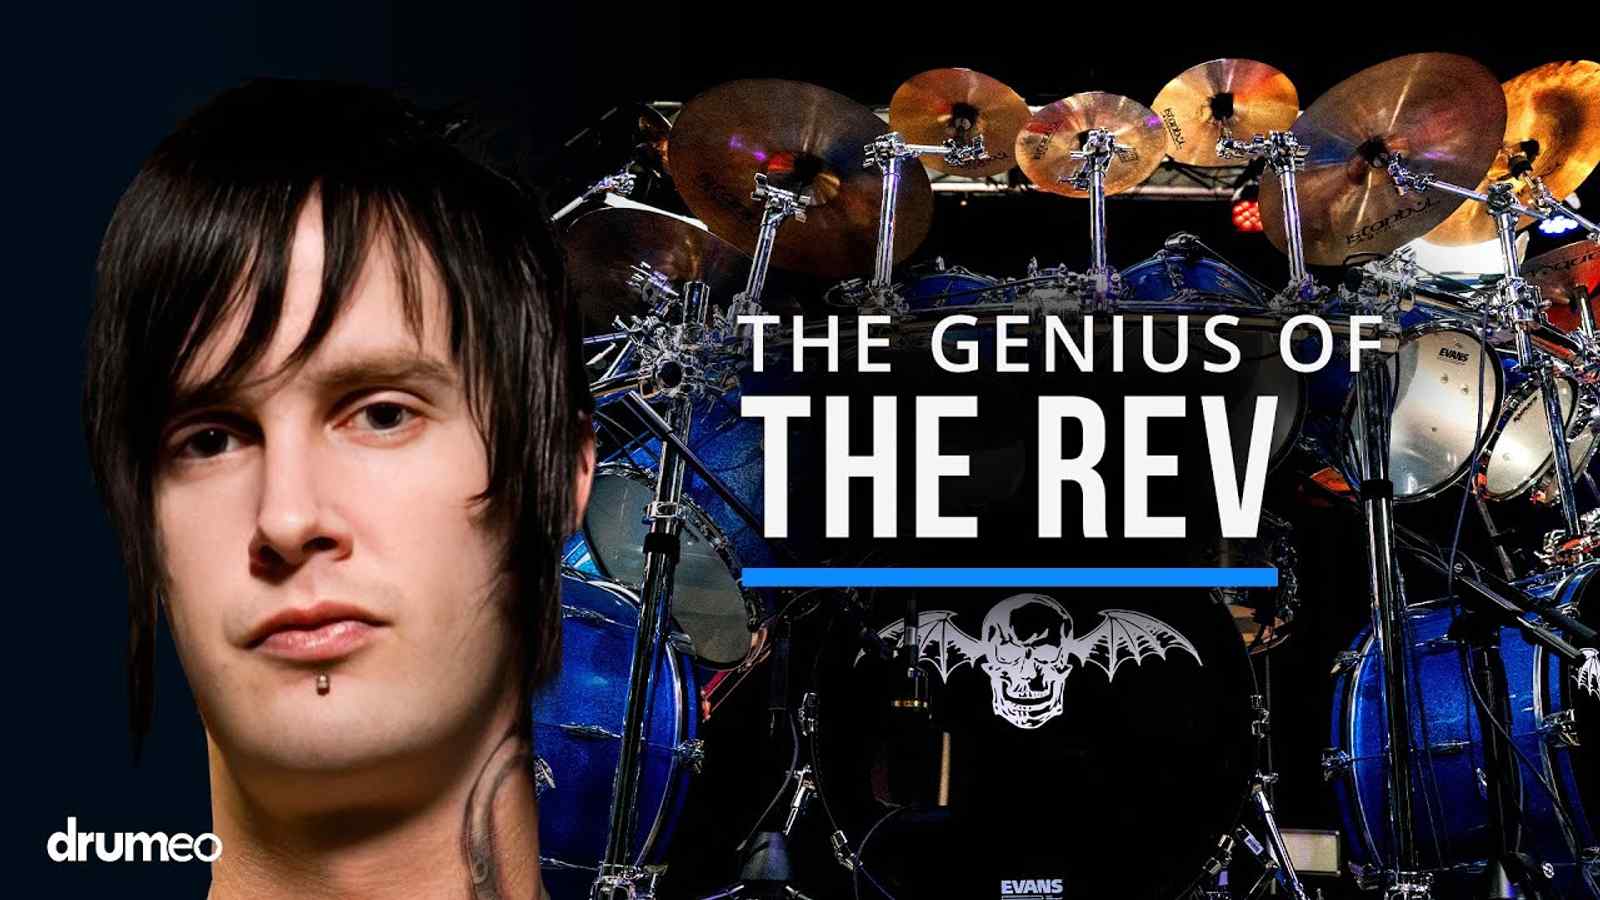 Drumeo: The Genius of The Rev